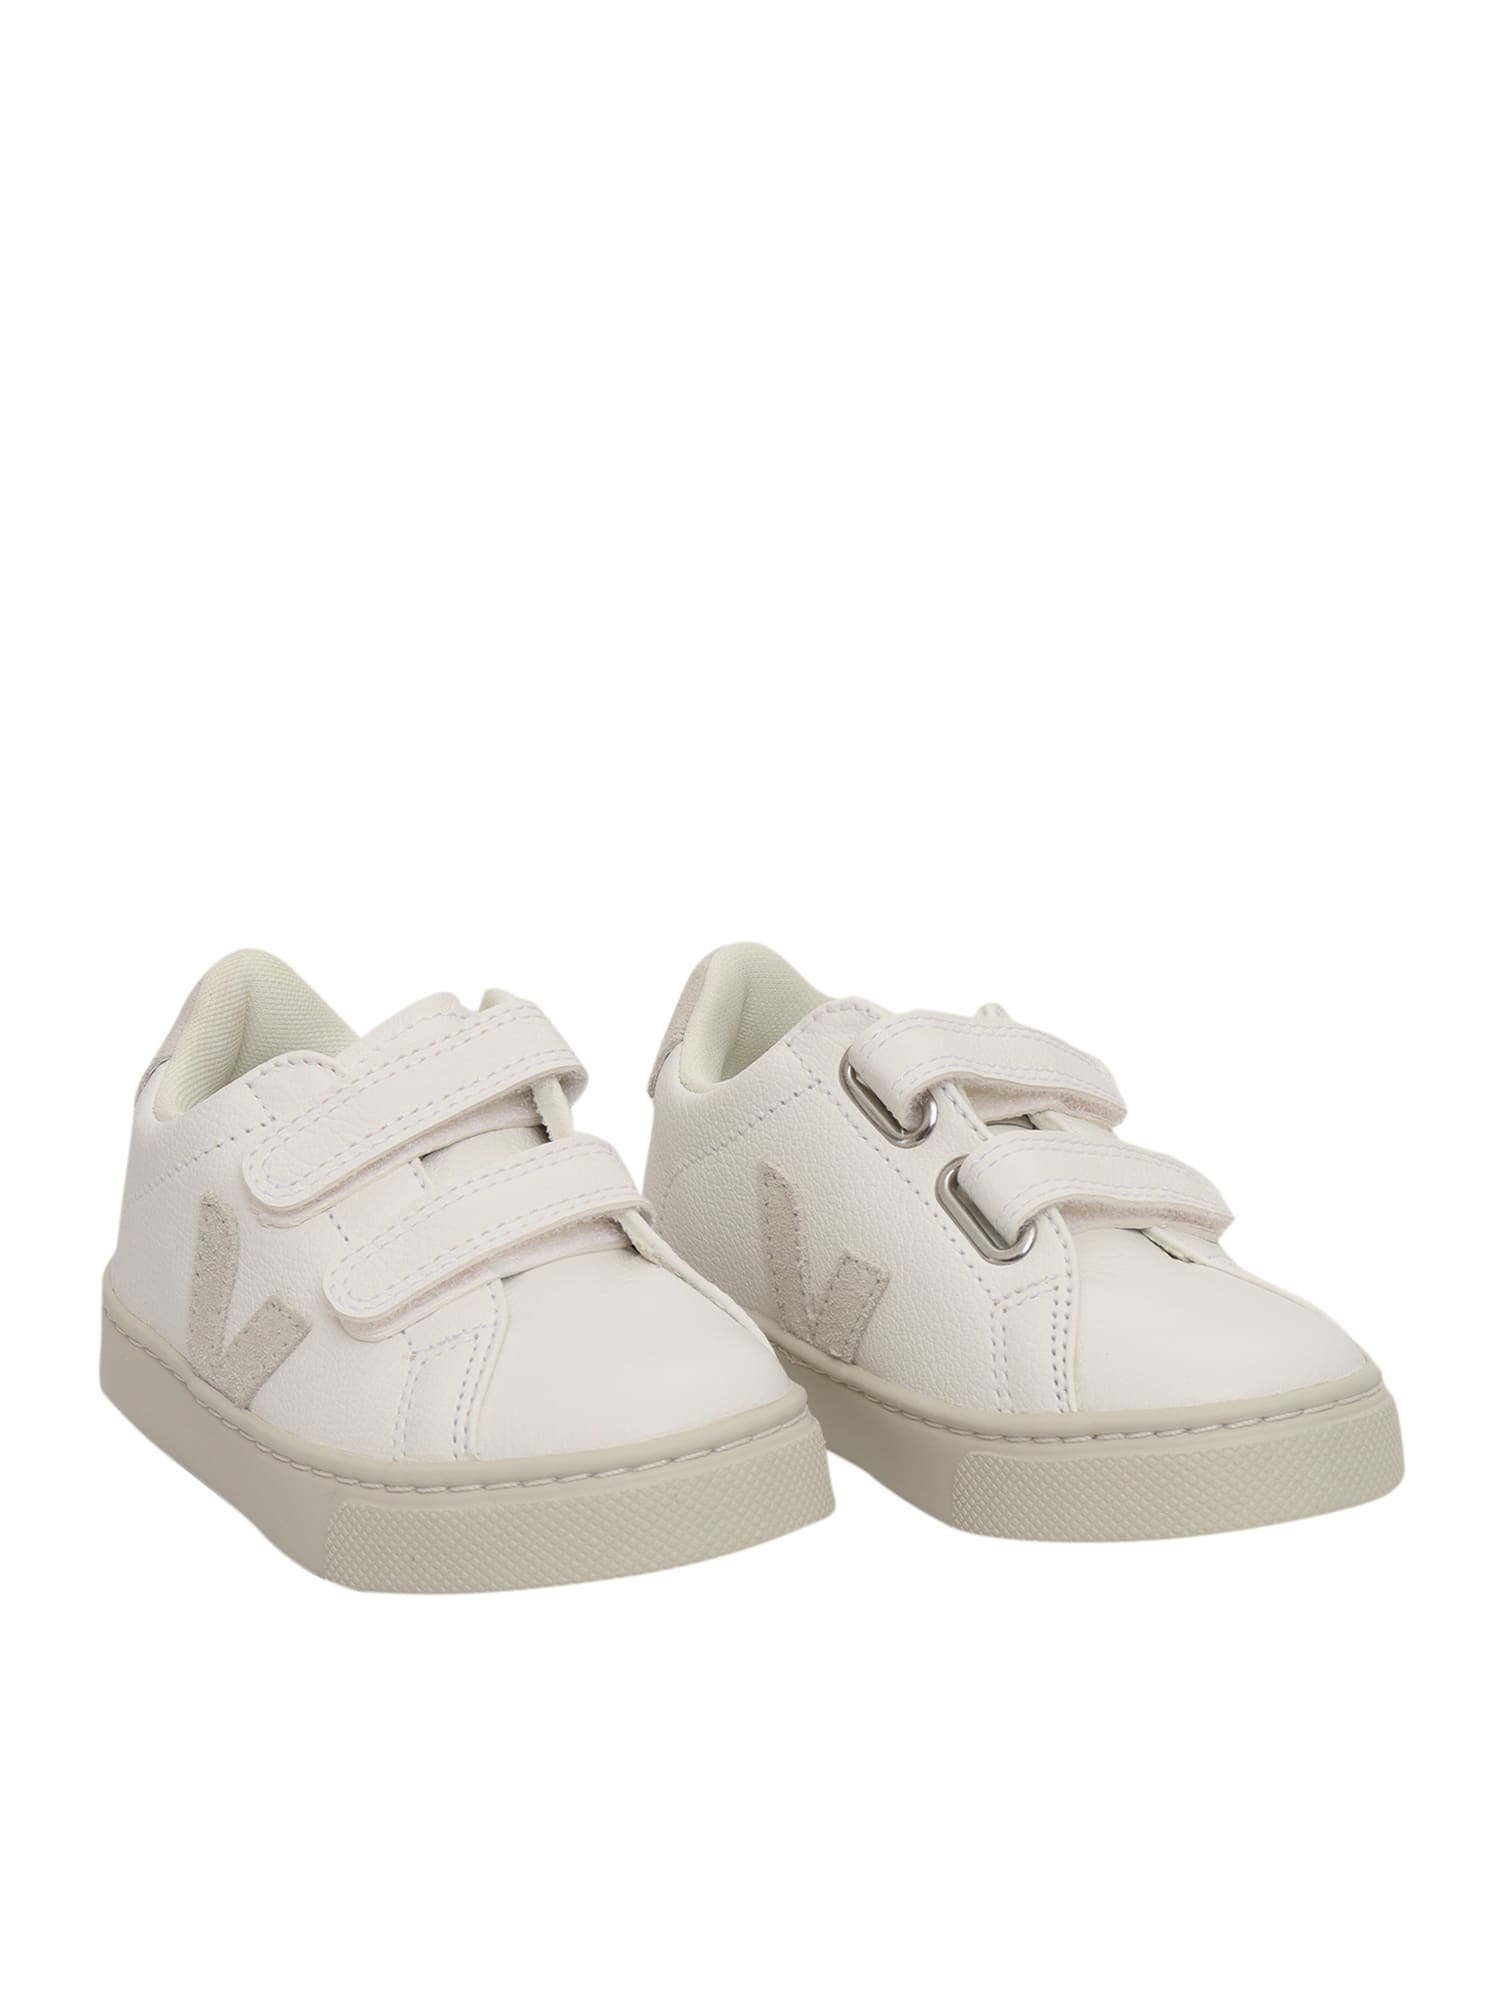 Veja Kids' Small Esplar Chromefree Sneakers In White